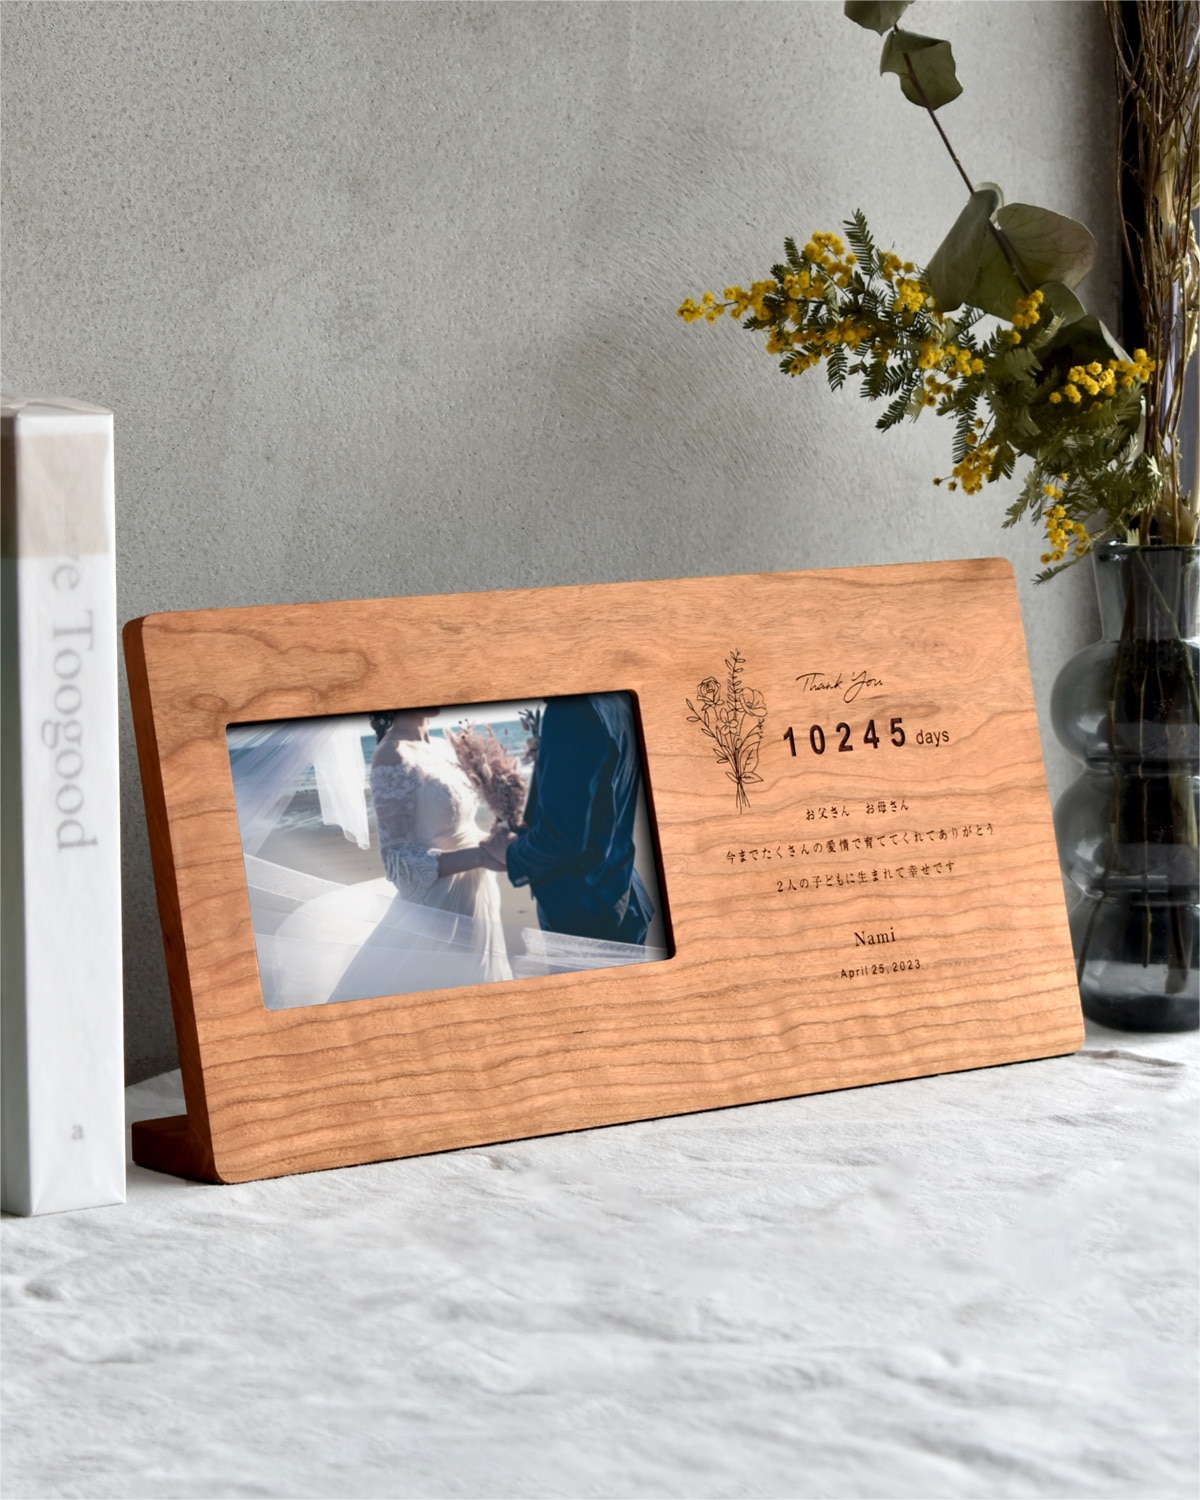 新商品】メッセージが刻印できる木製デジタルフォトフレーム 「Engraved Digital Photo Frame」の販売を開始